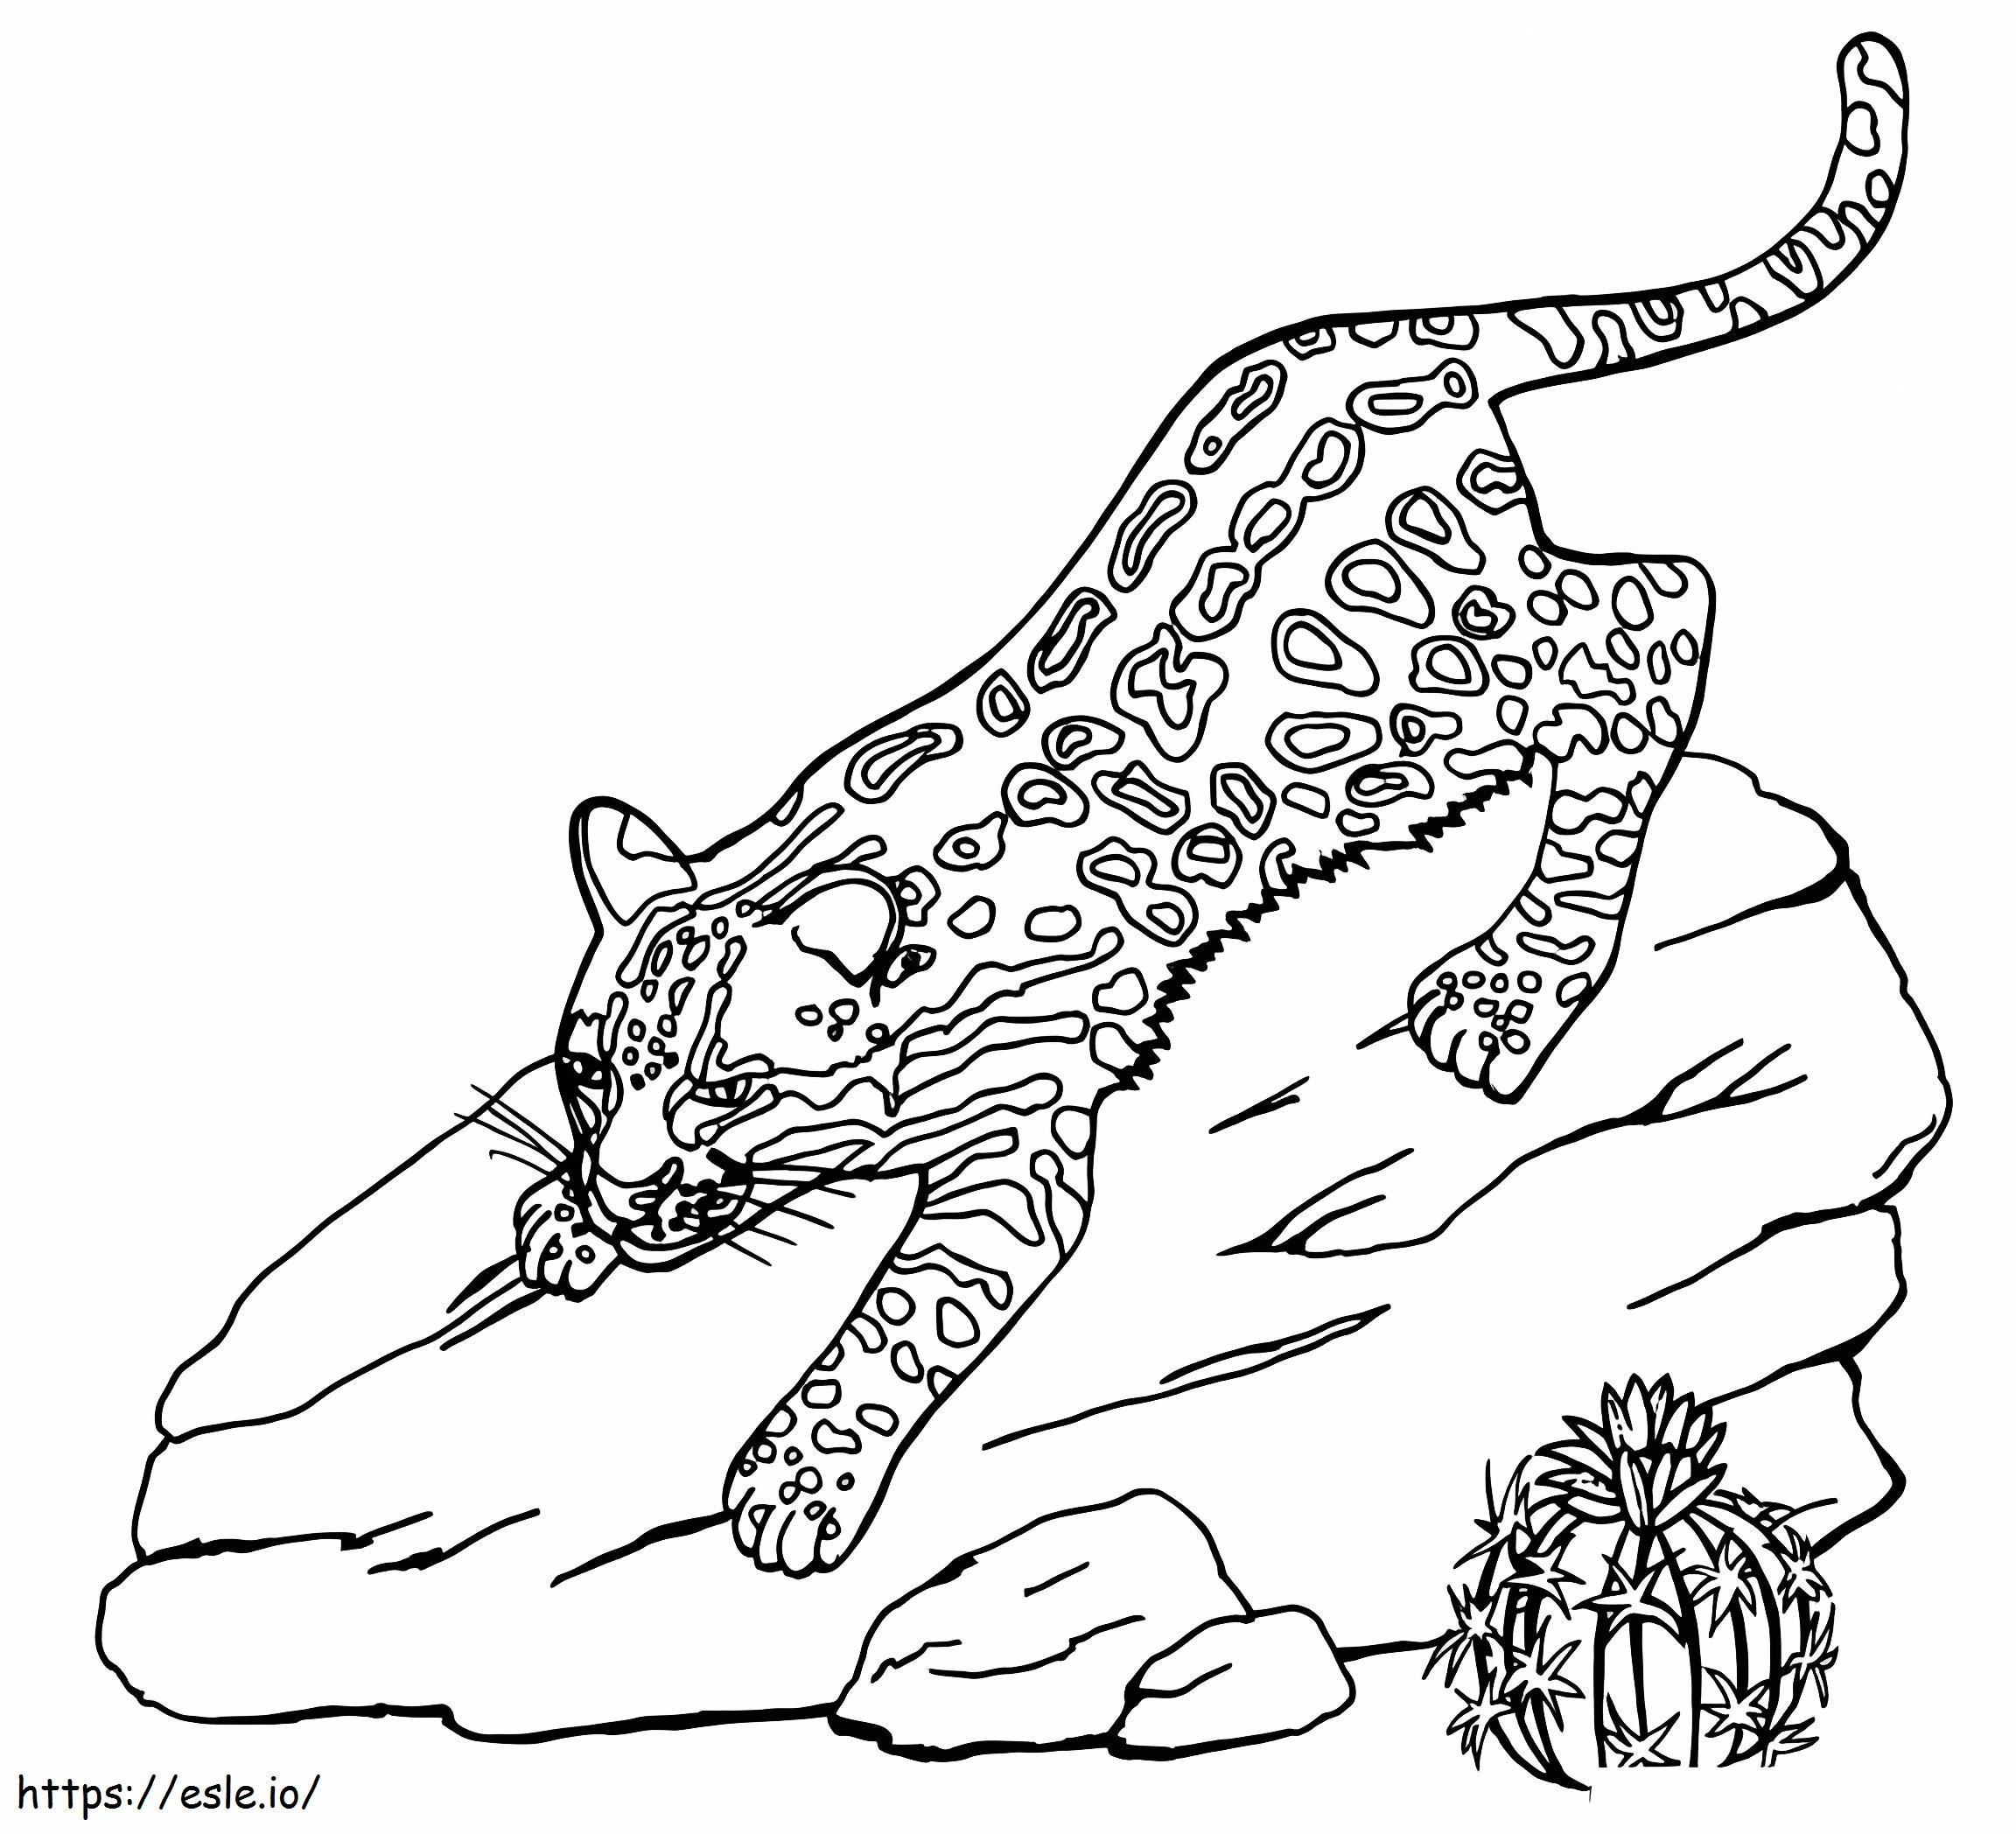 Gattopardo su una roccia da colorare